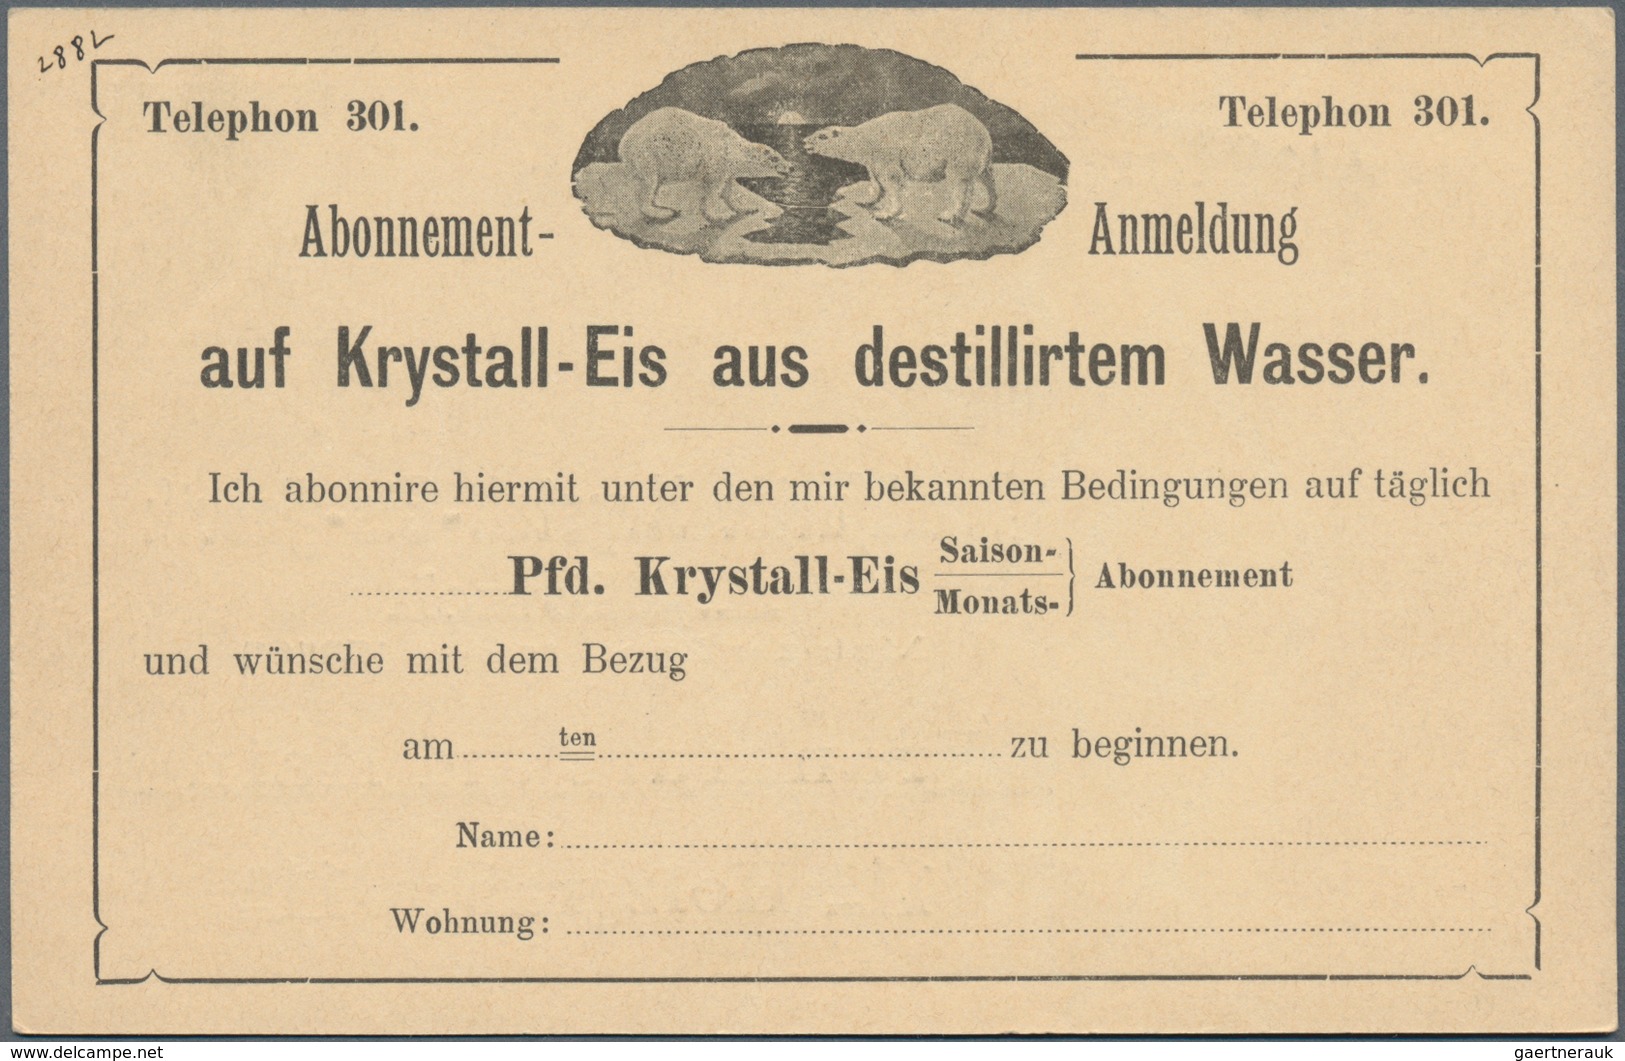 Deutschland - Ganzsachen: 1855 ab ca., umfangreiche Sammlung mit ca.2000 gebrauchten u. ungebrauchte